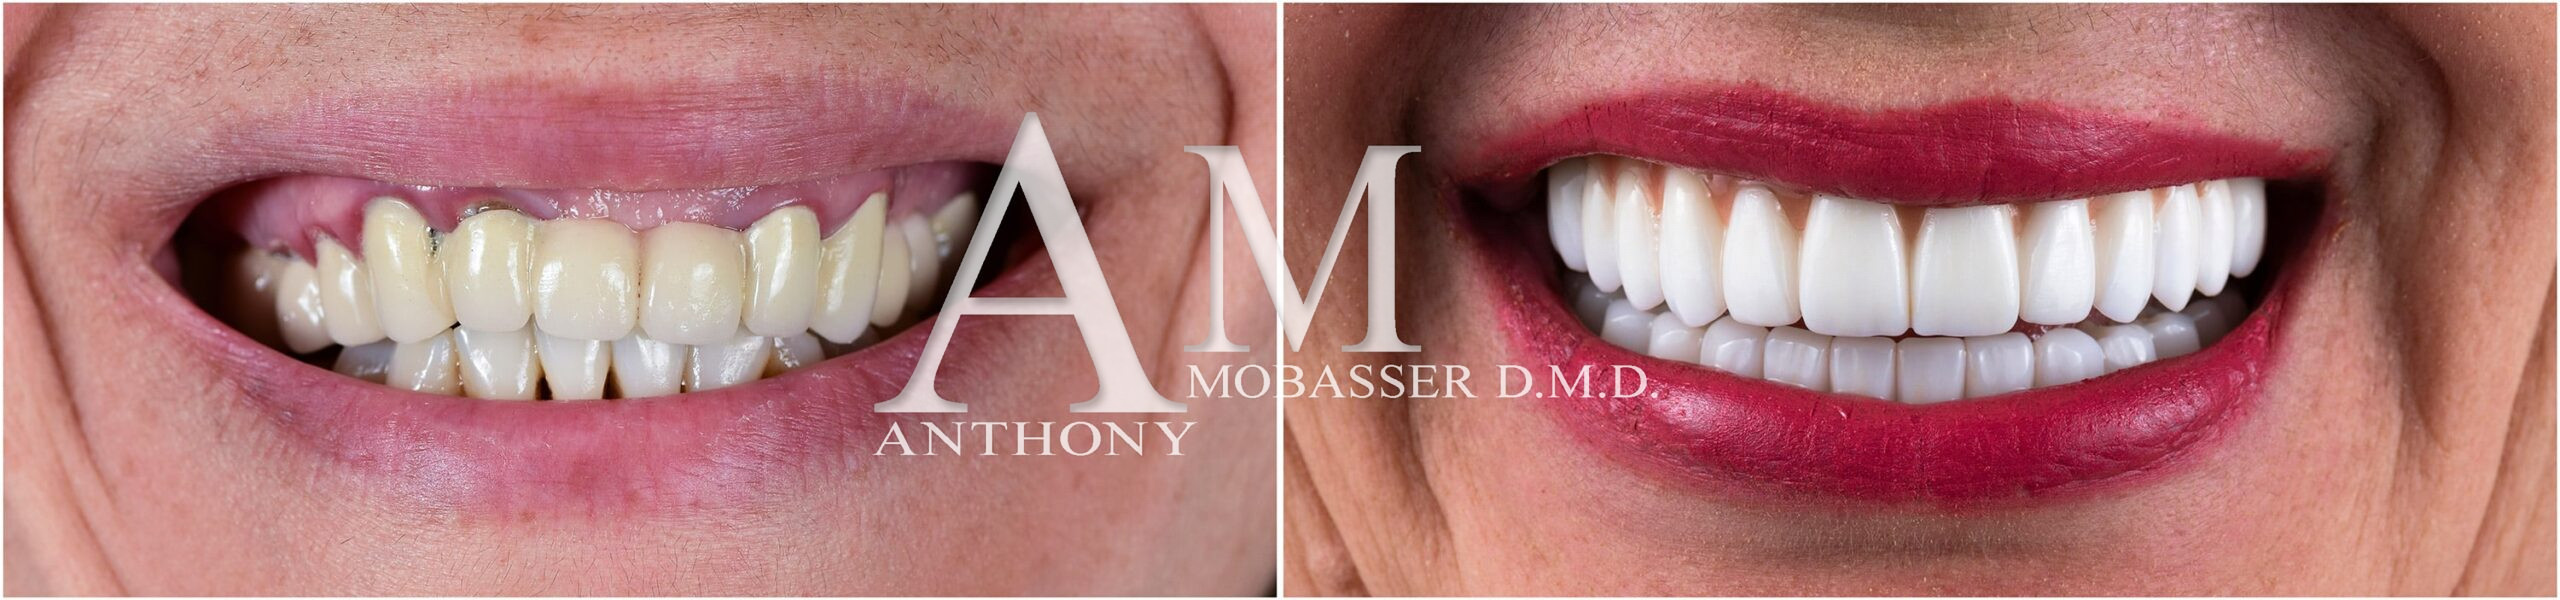 Mejor Dentista Estético del Mundo | Dr. Anthony Mobasser